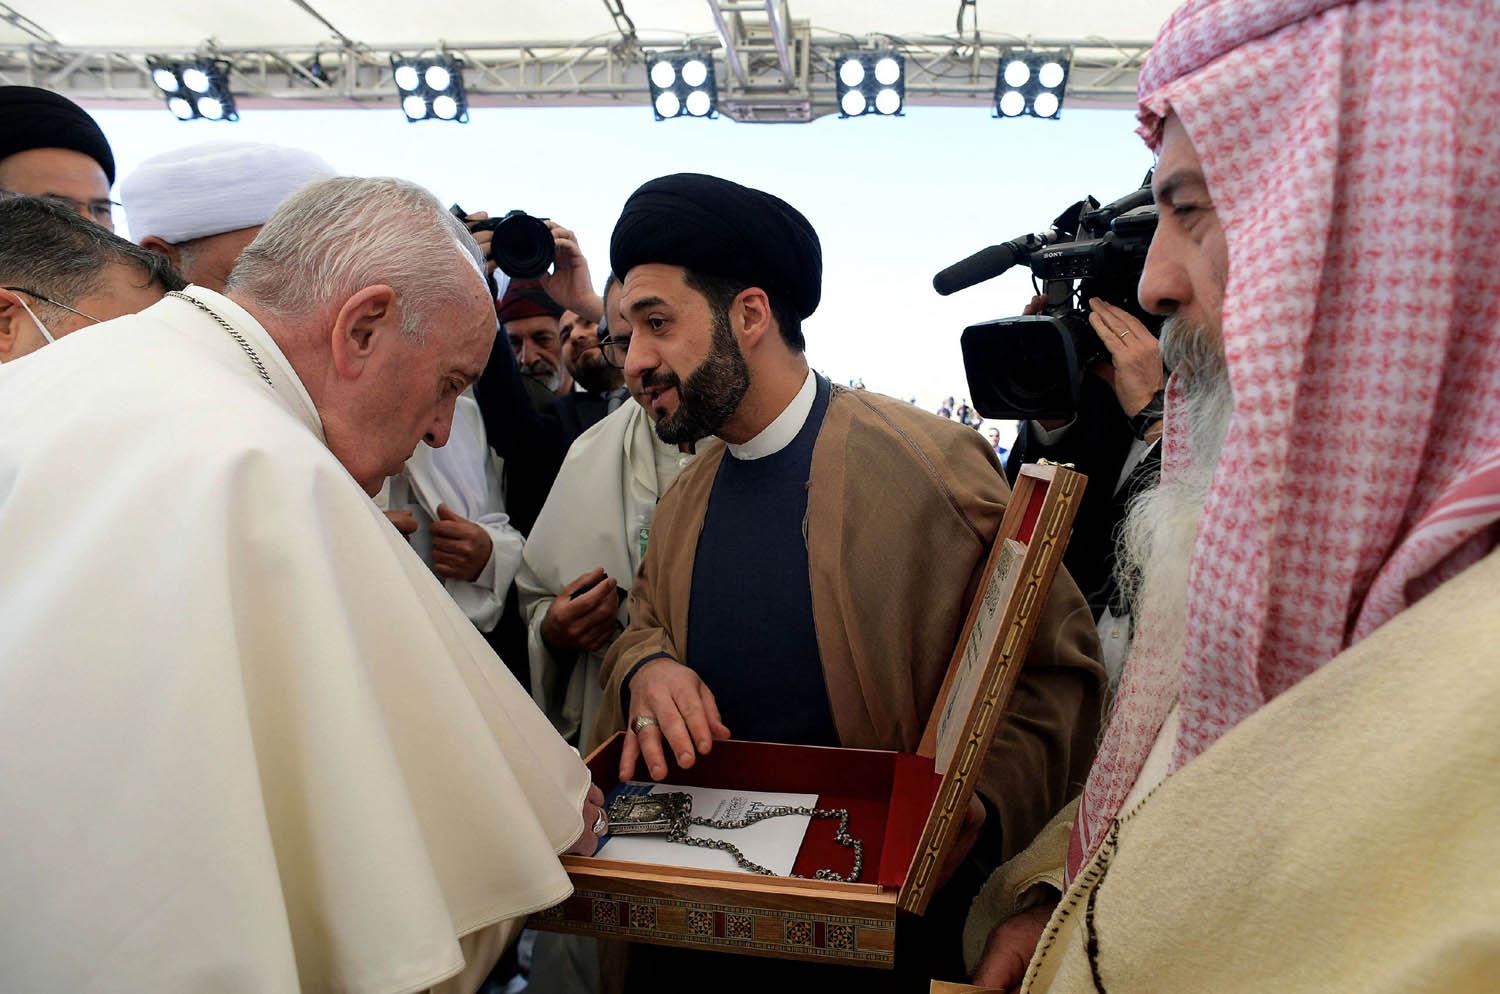 البابا يستمع لرجل ديني شيعي في أور جنوب العراق